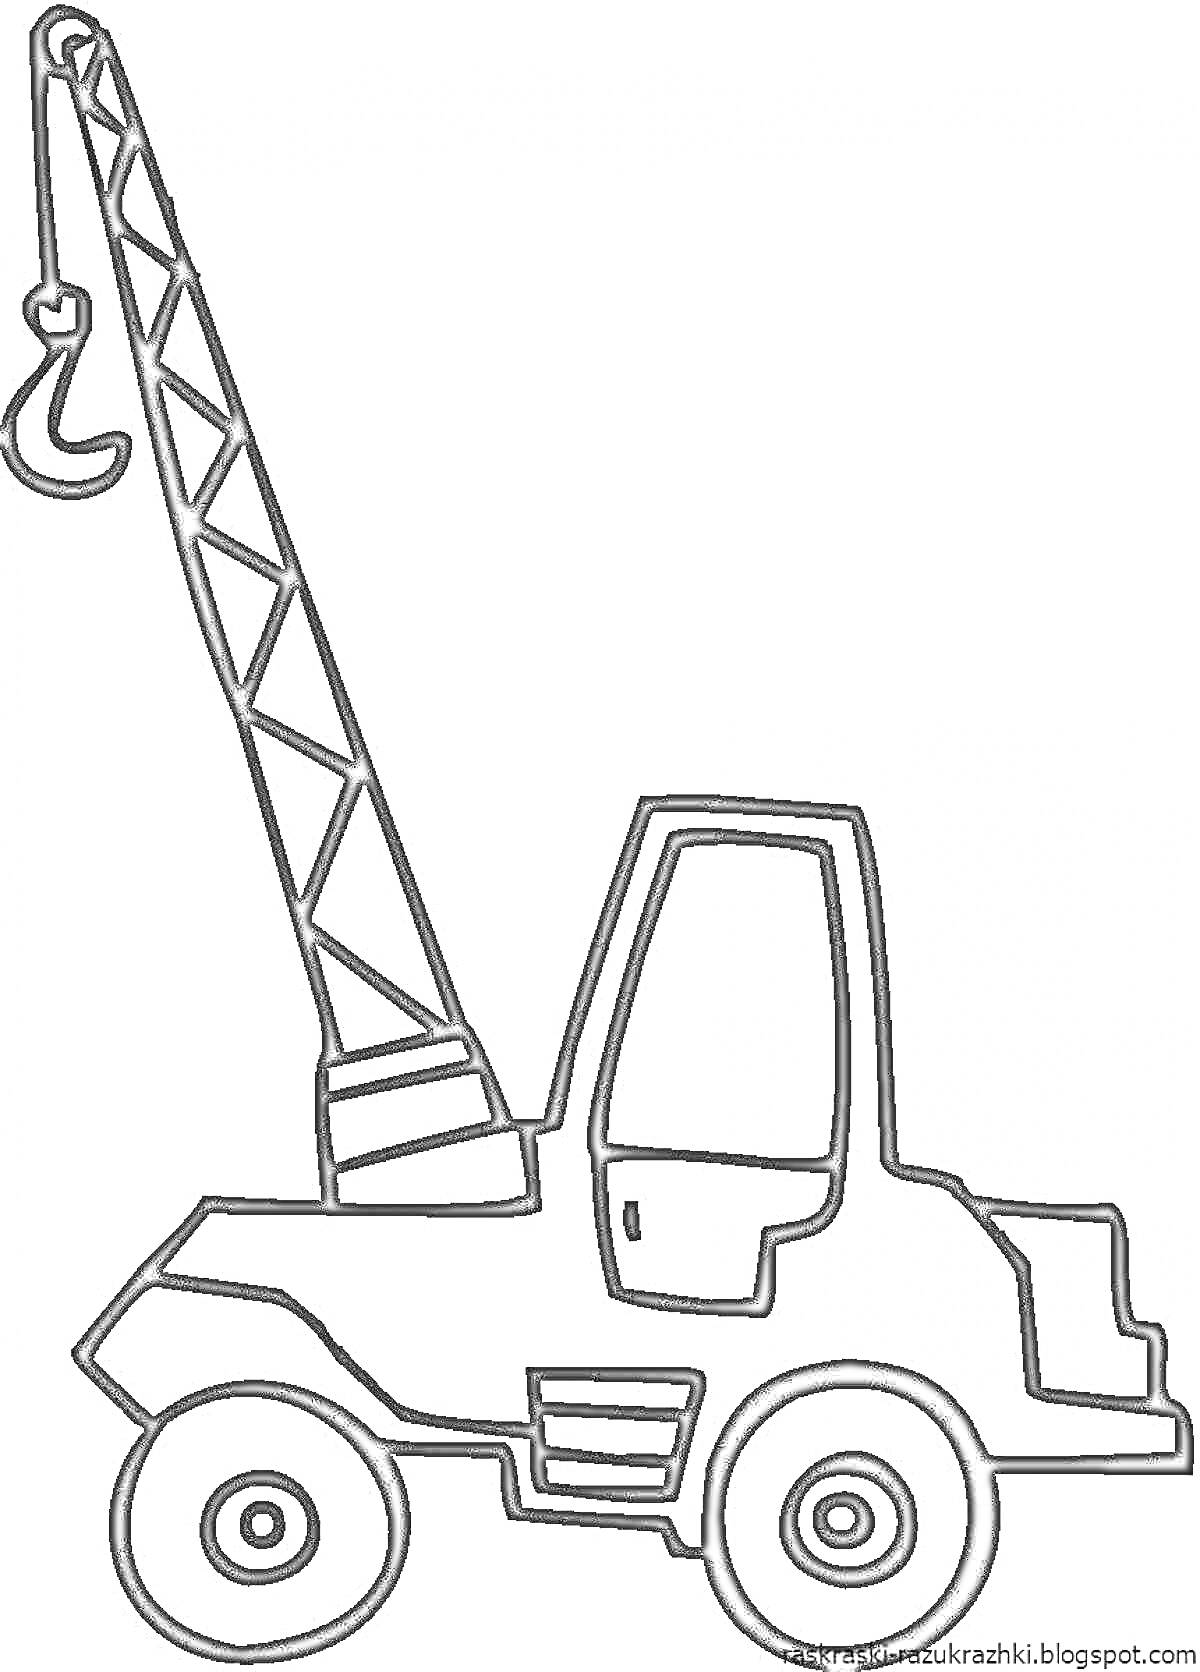 Раскраска Автокран с вытянутой стрелой и крюком, на колесах